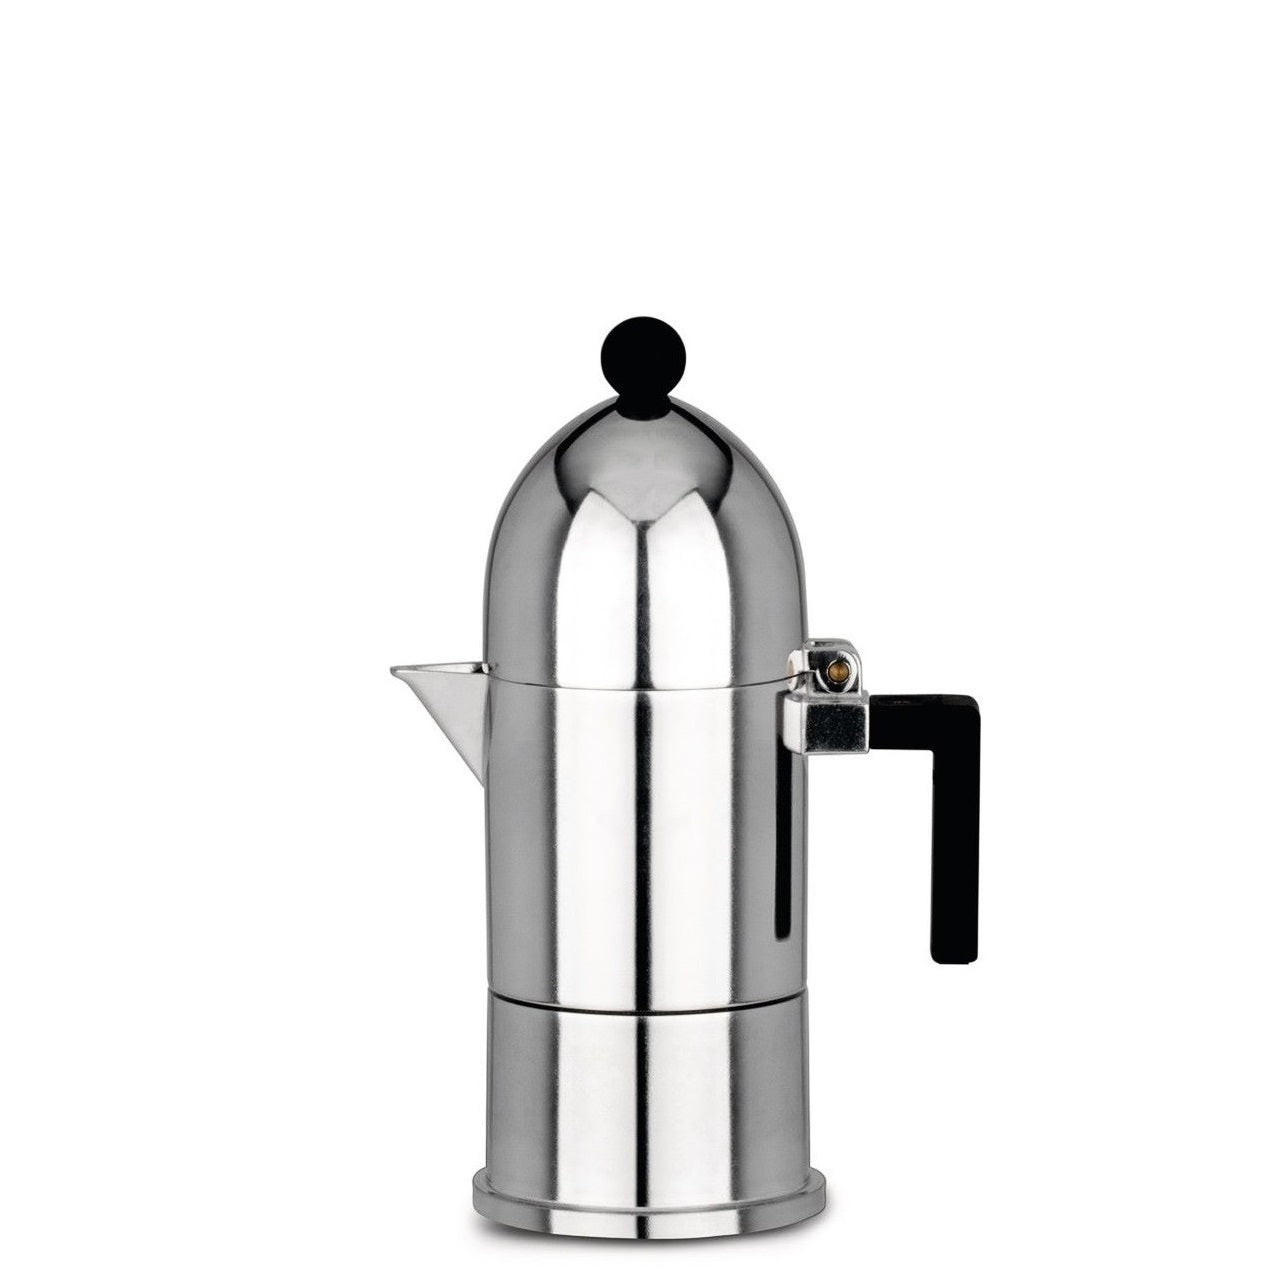 Alessi - Moka Espresso Coffee Maker 3 Cups